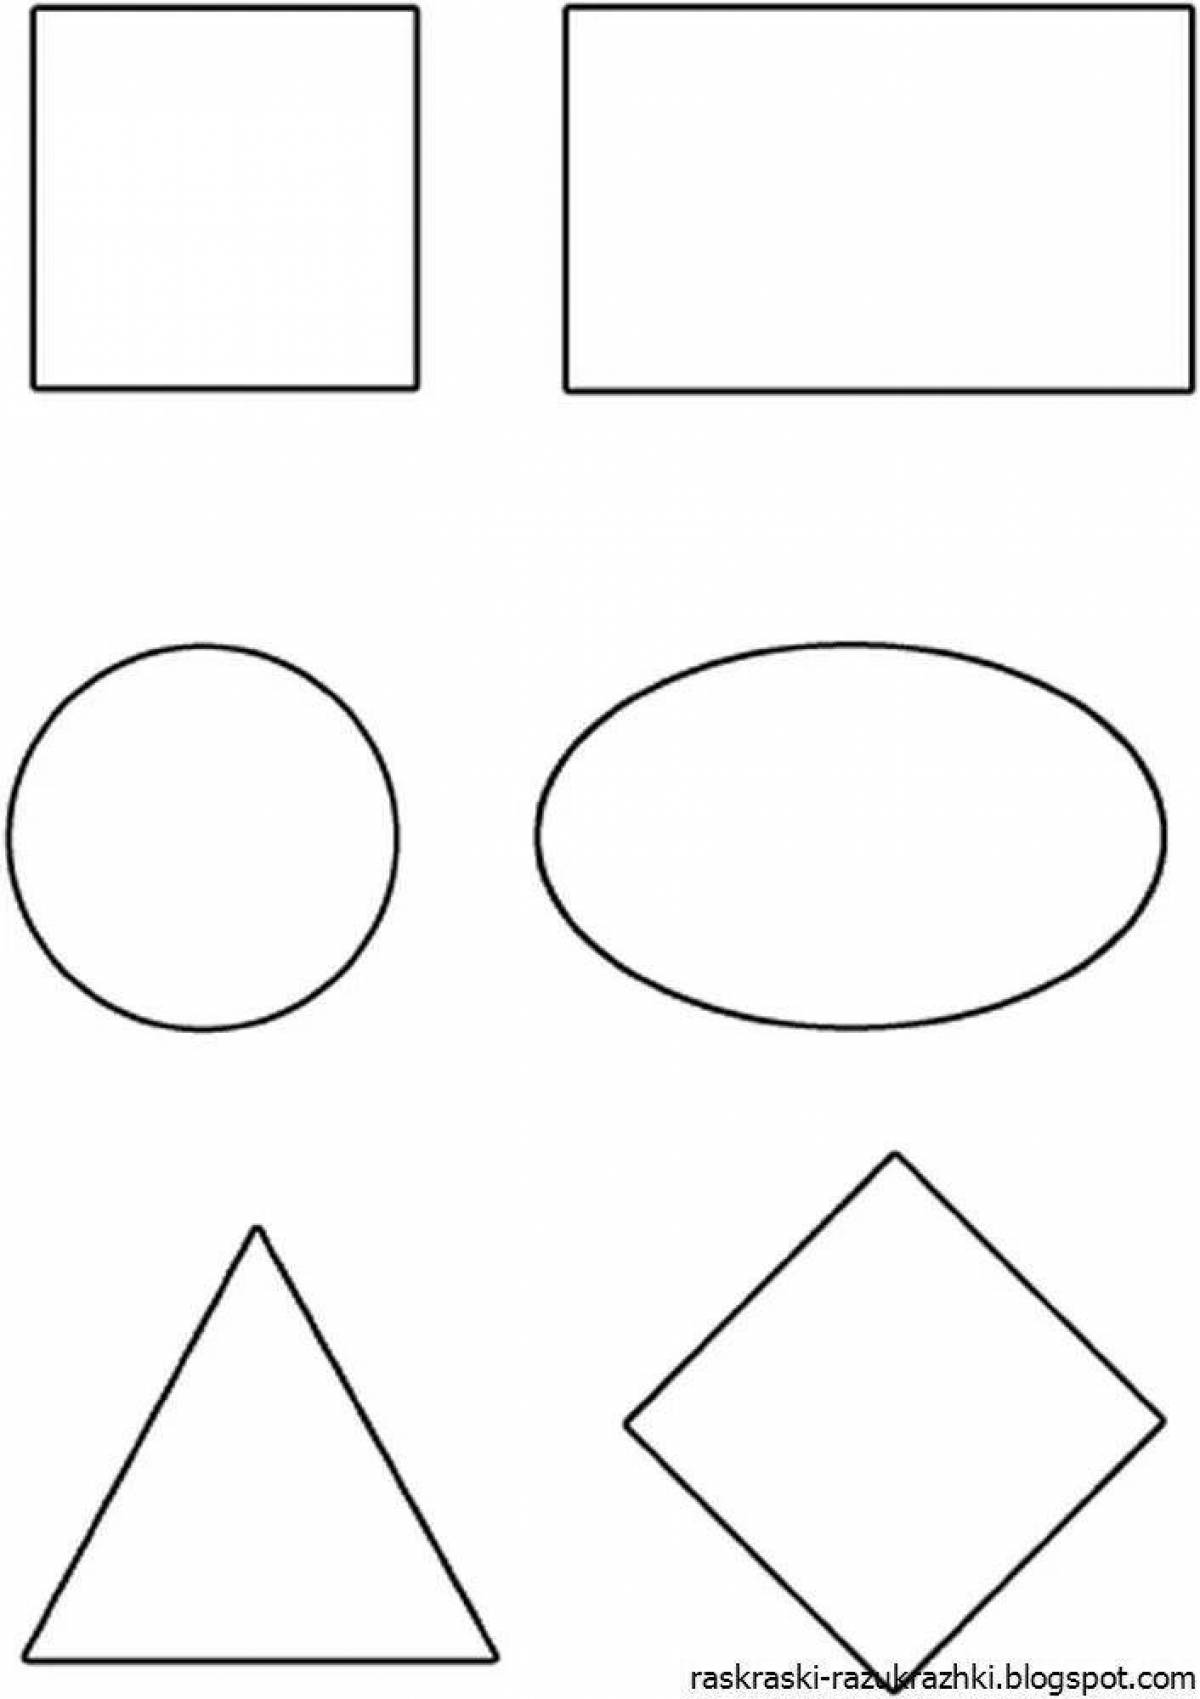 Geometric shapes #11